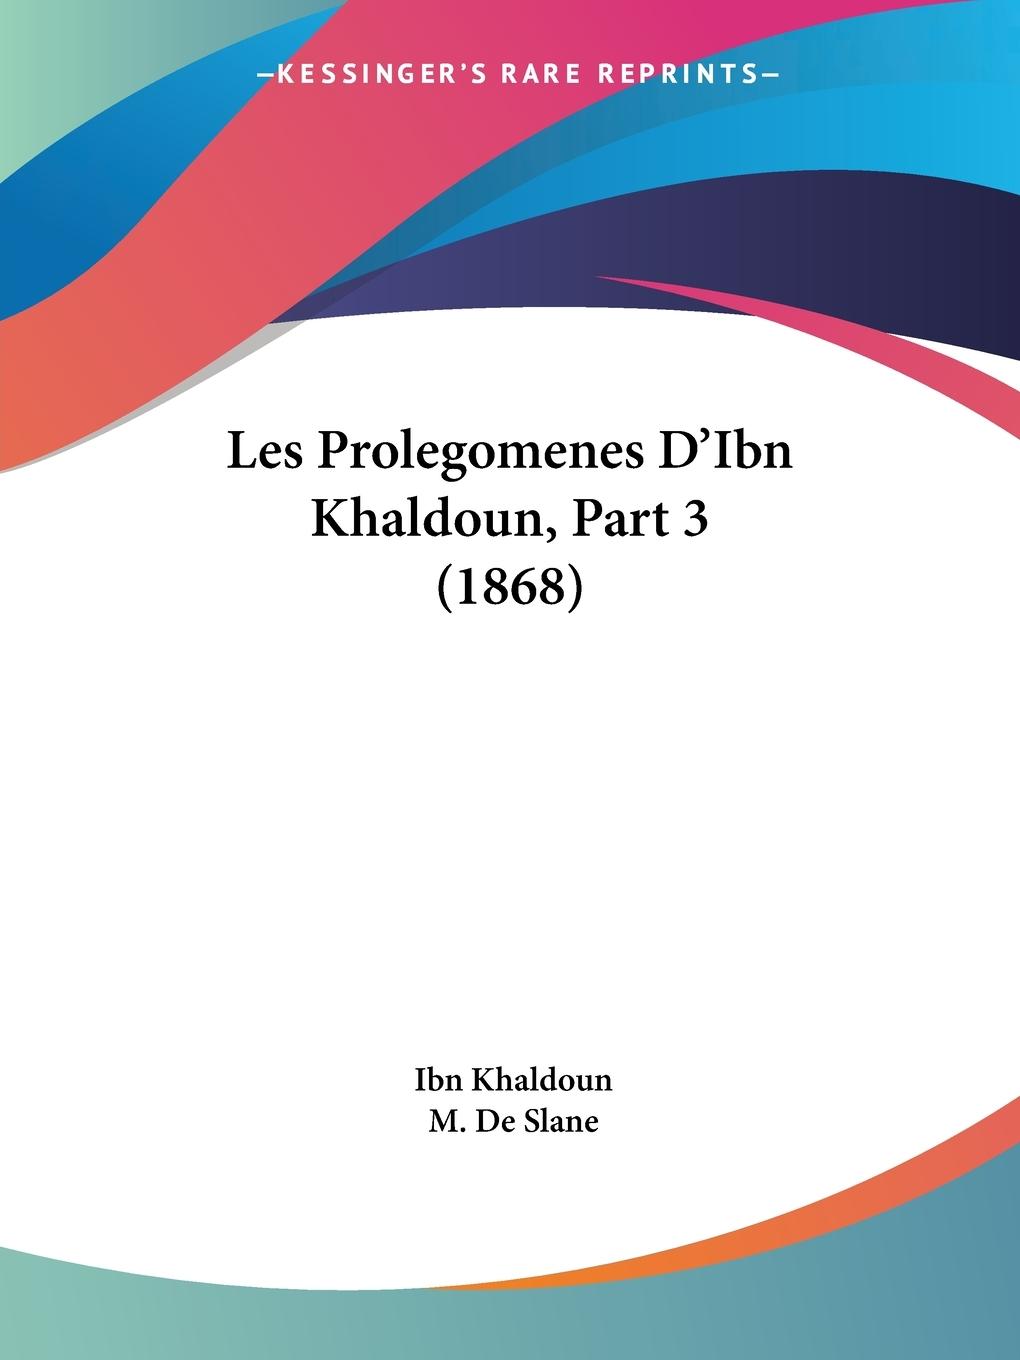 Les Prolegomenes D Ibn Khaldoun, Part 3 (1868) - Khaldoun, Ibn